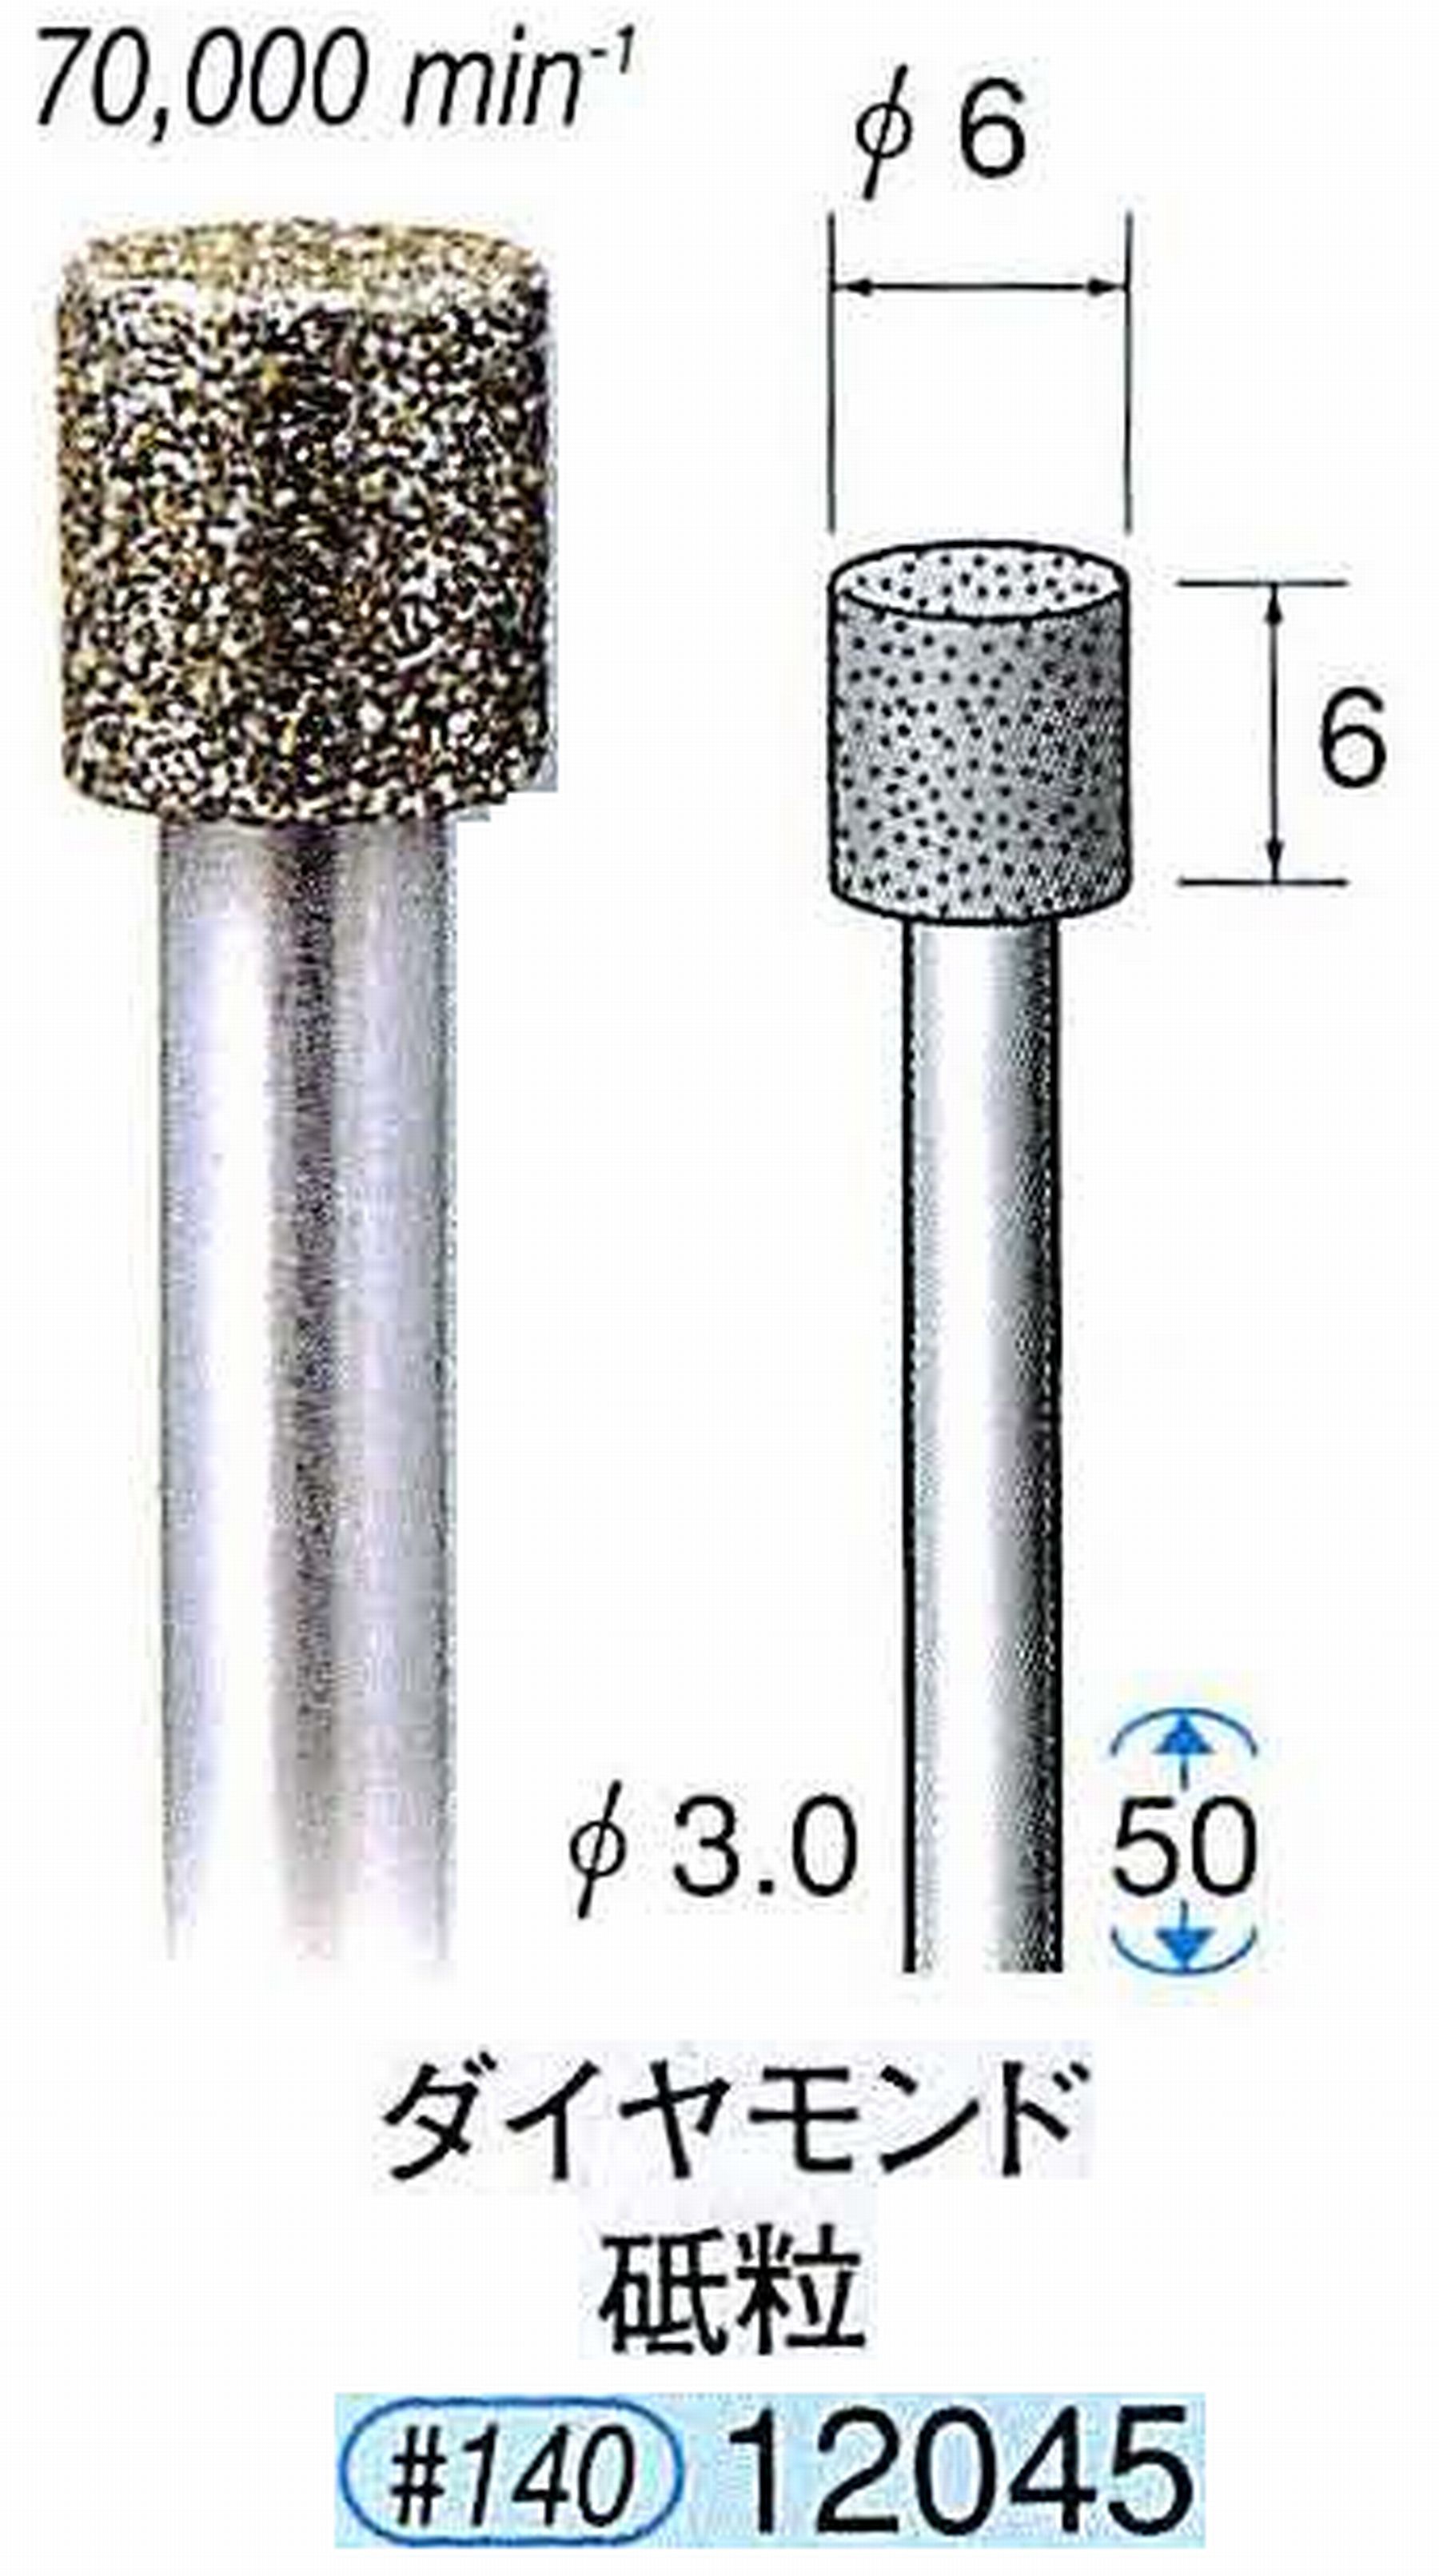 ナカニシ/NAKANISHI 電着ダイヤモンド ダイヤモンド砥粒 軸径(シャンク)φ3.0mm 12045